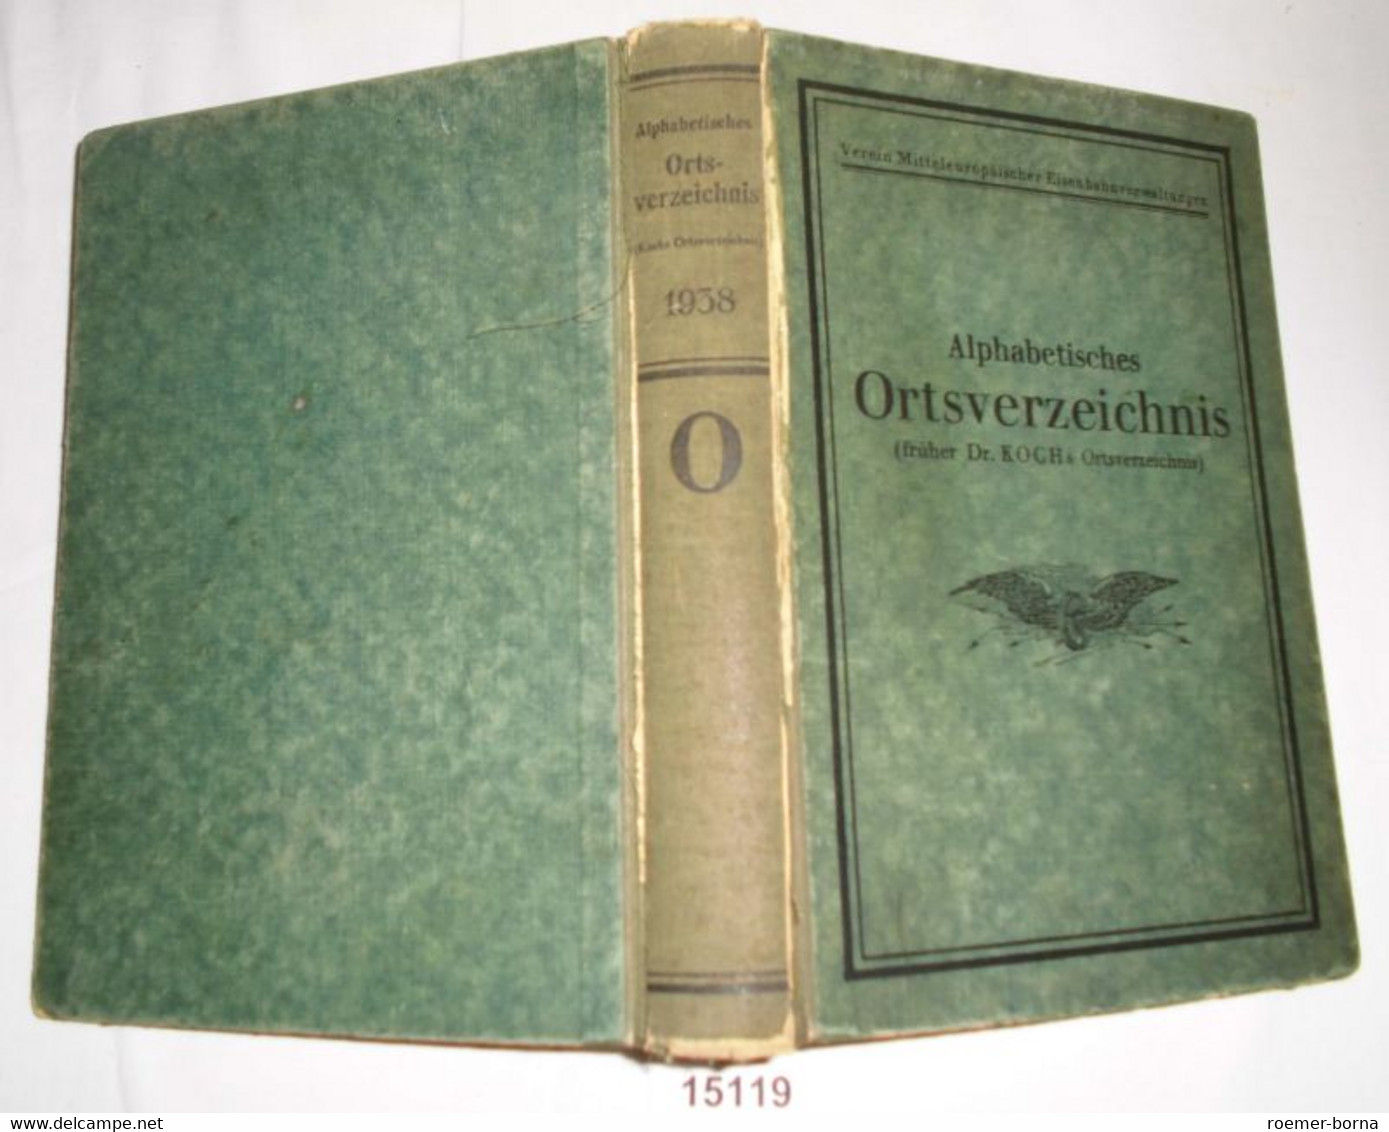 Alphabetisches Ortsverzeichnis (früher Dr. Koch's Orstverzeichnis) Ausgabe 1938, Verein Mitteleuropäischer Eisenbahnverw - Non Classés